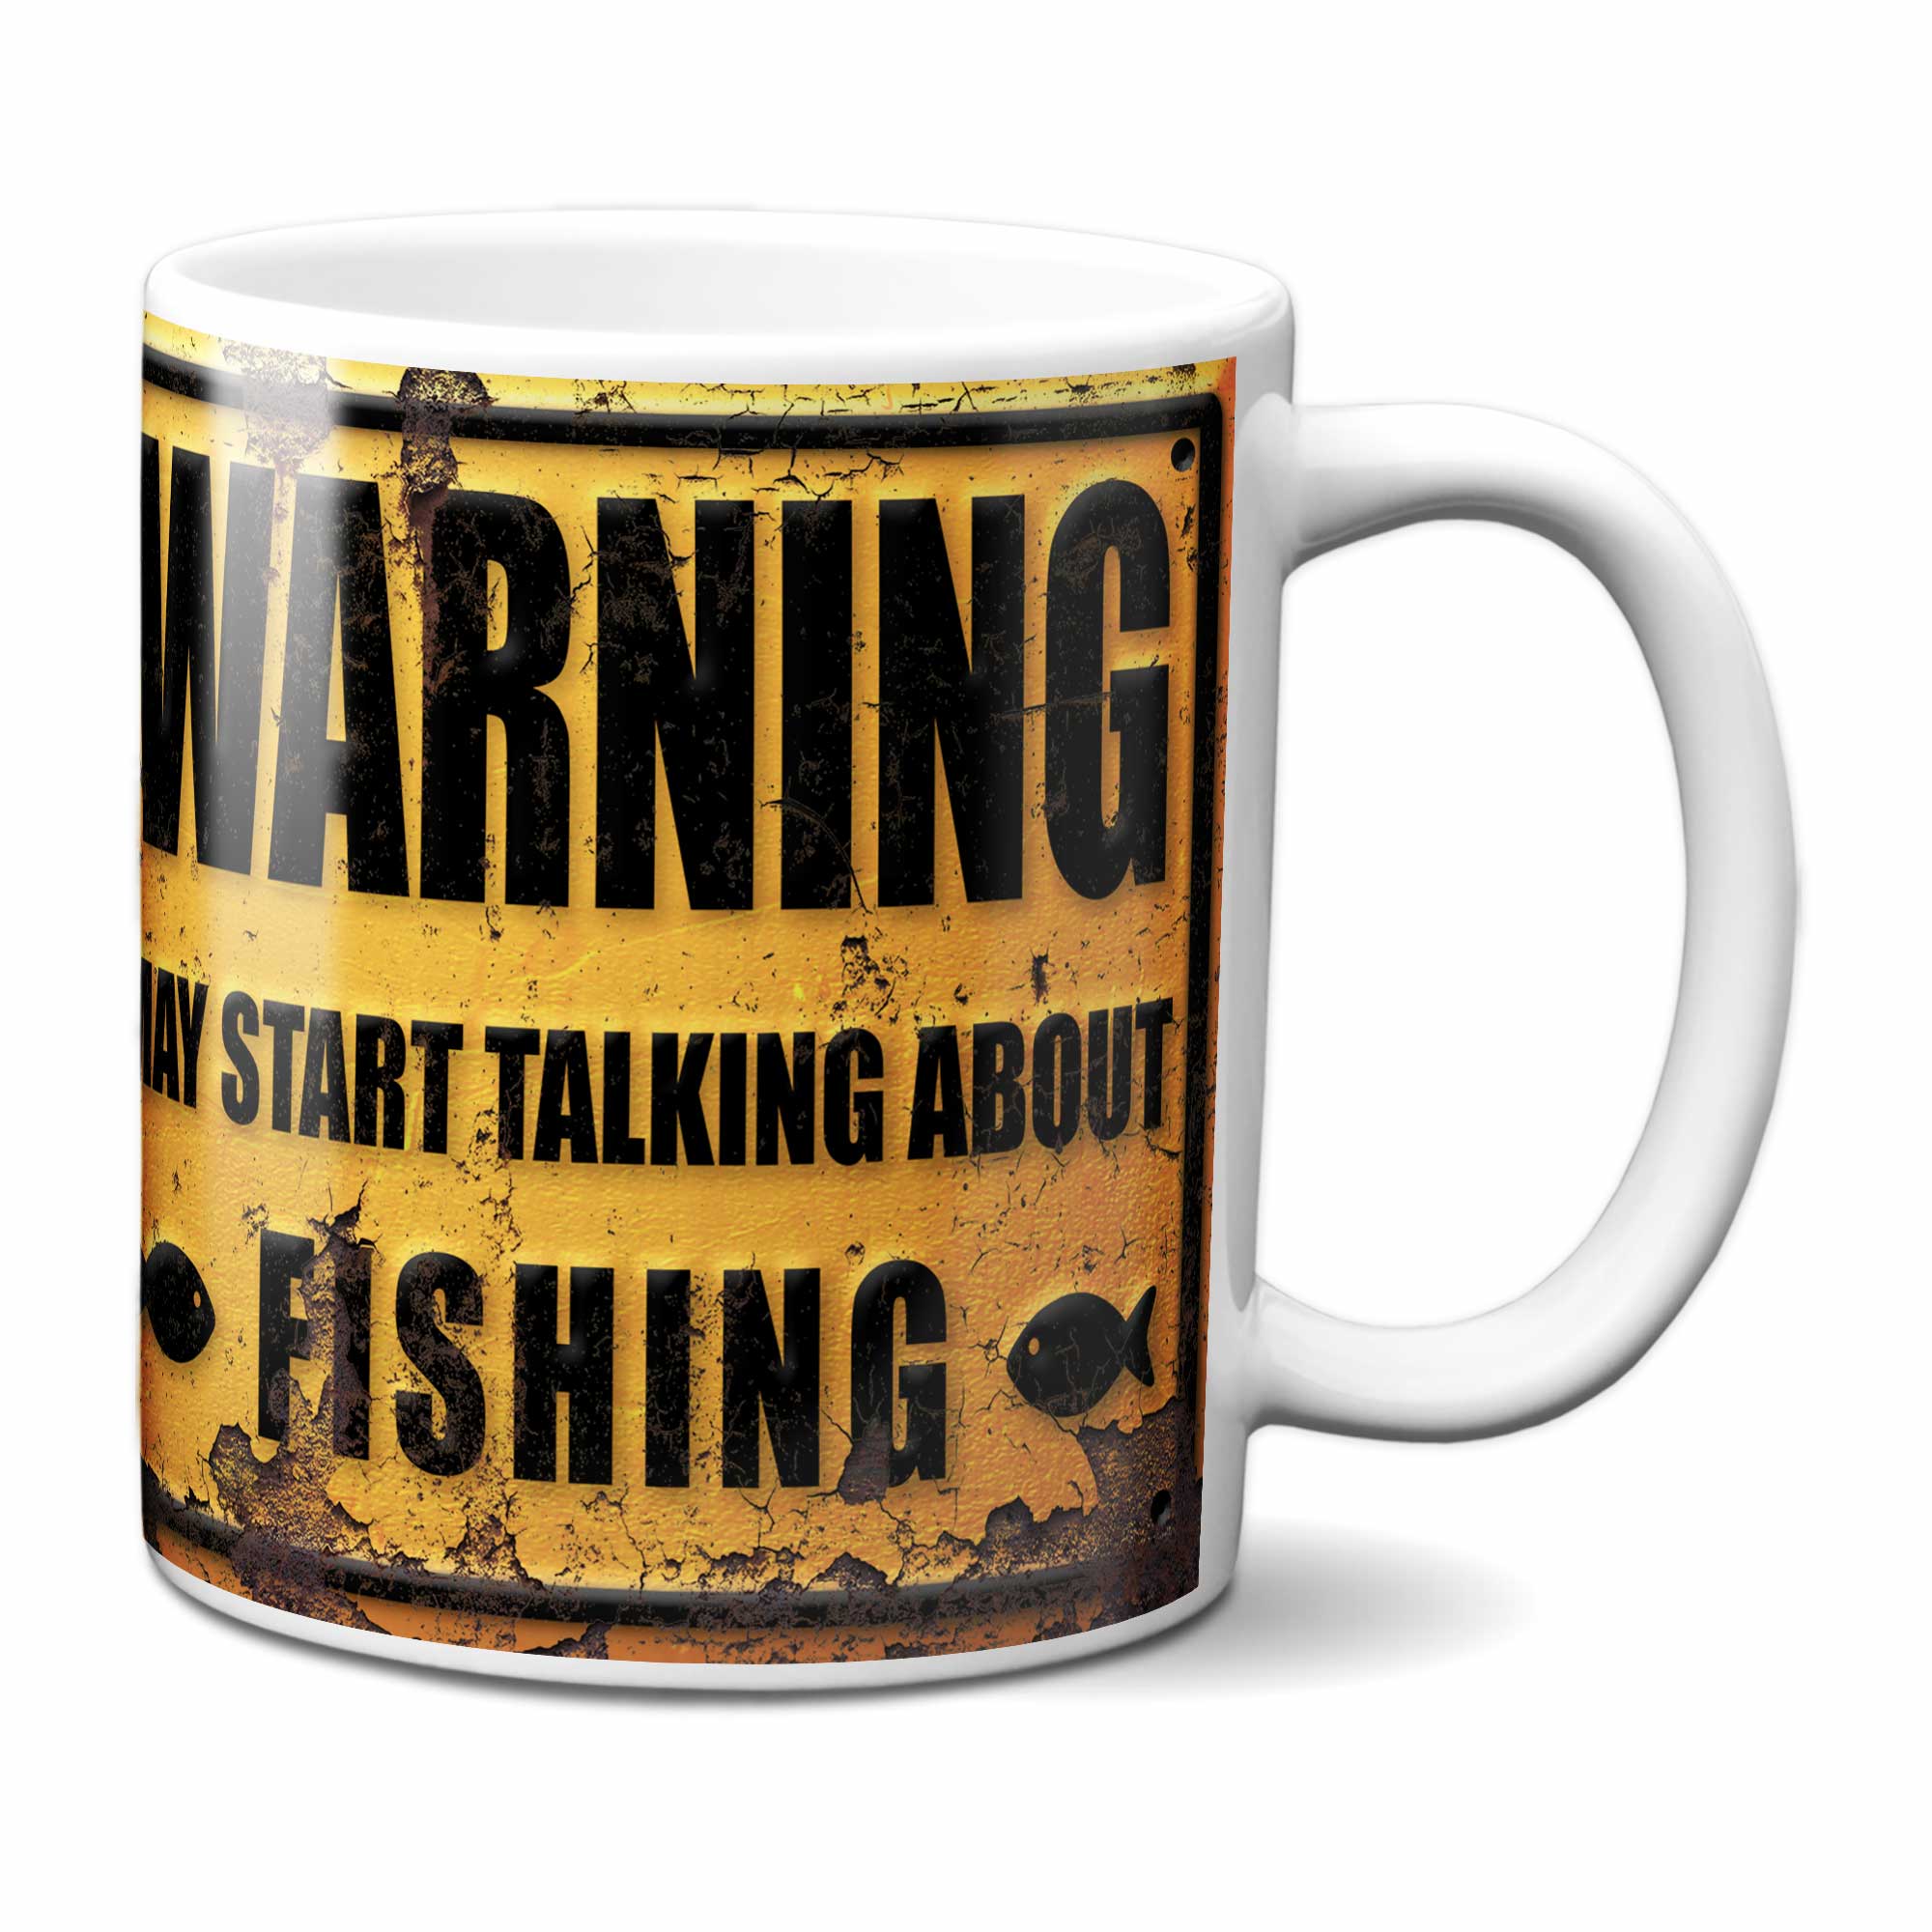 Warning May Start Talking About Fishing Mug